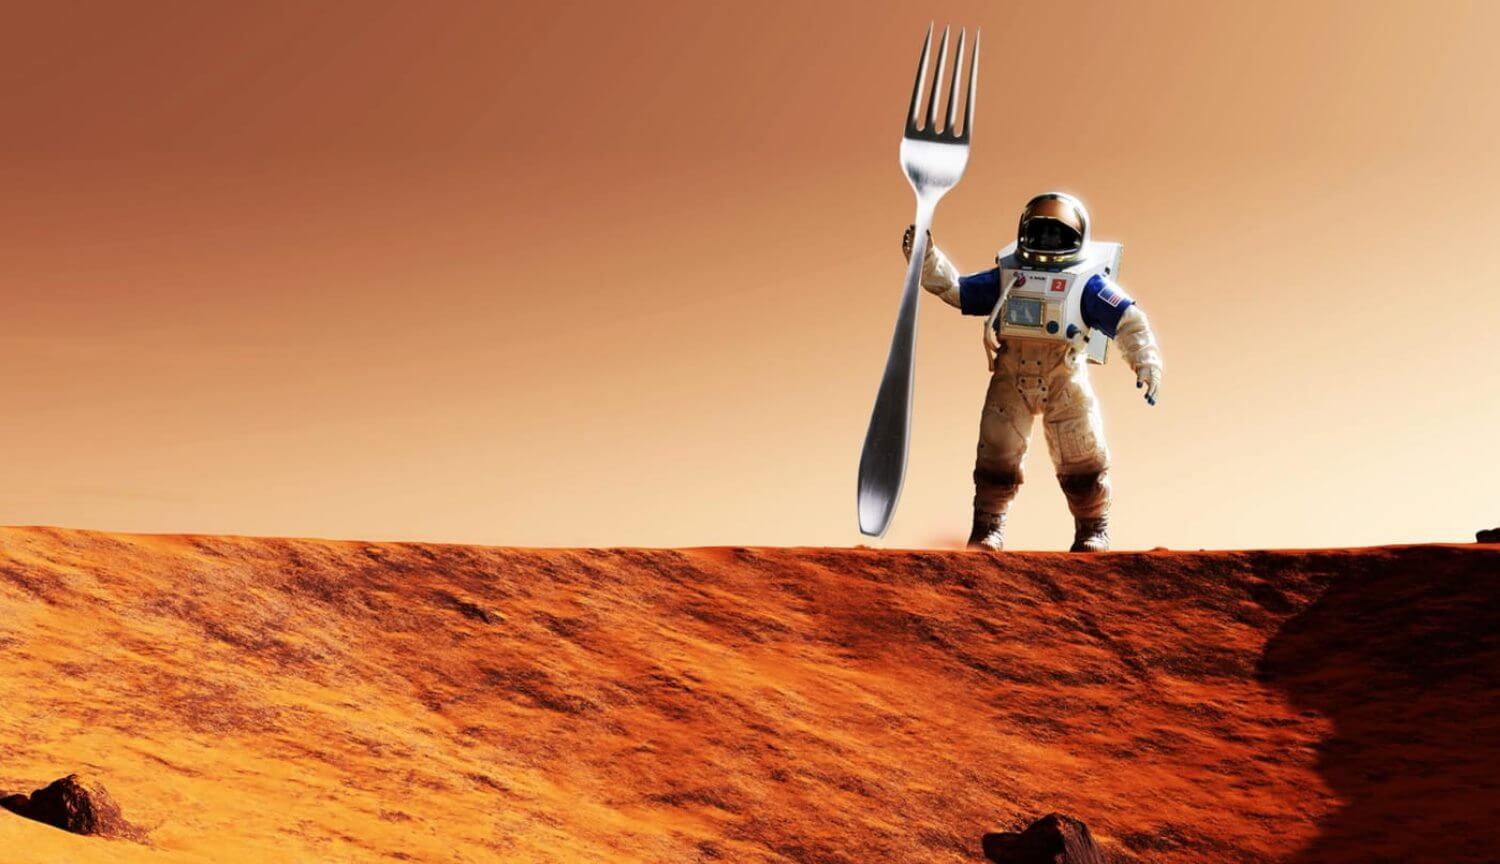 تحتاج إلى أكل وشرب البقاء على قيد الحياة على كوكب المريخ ؟ 